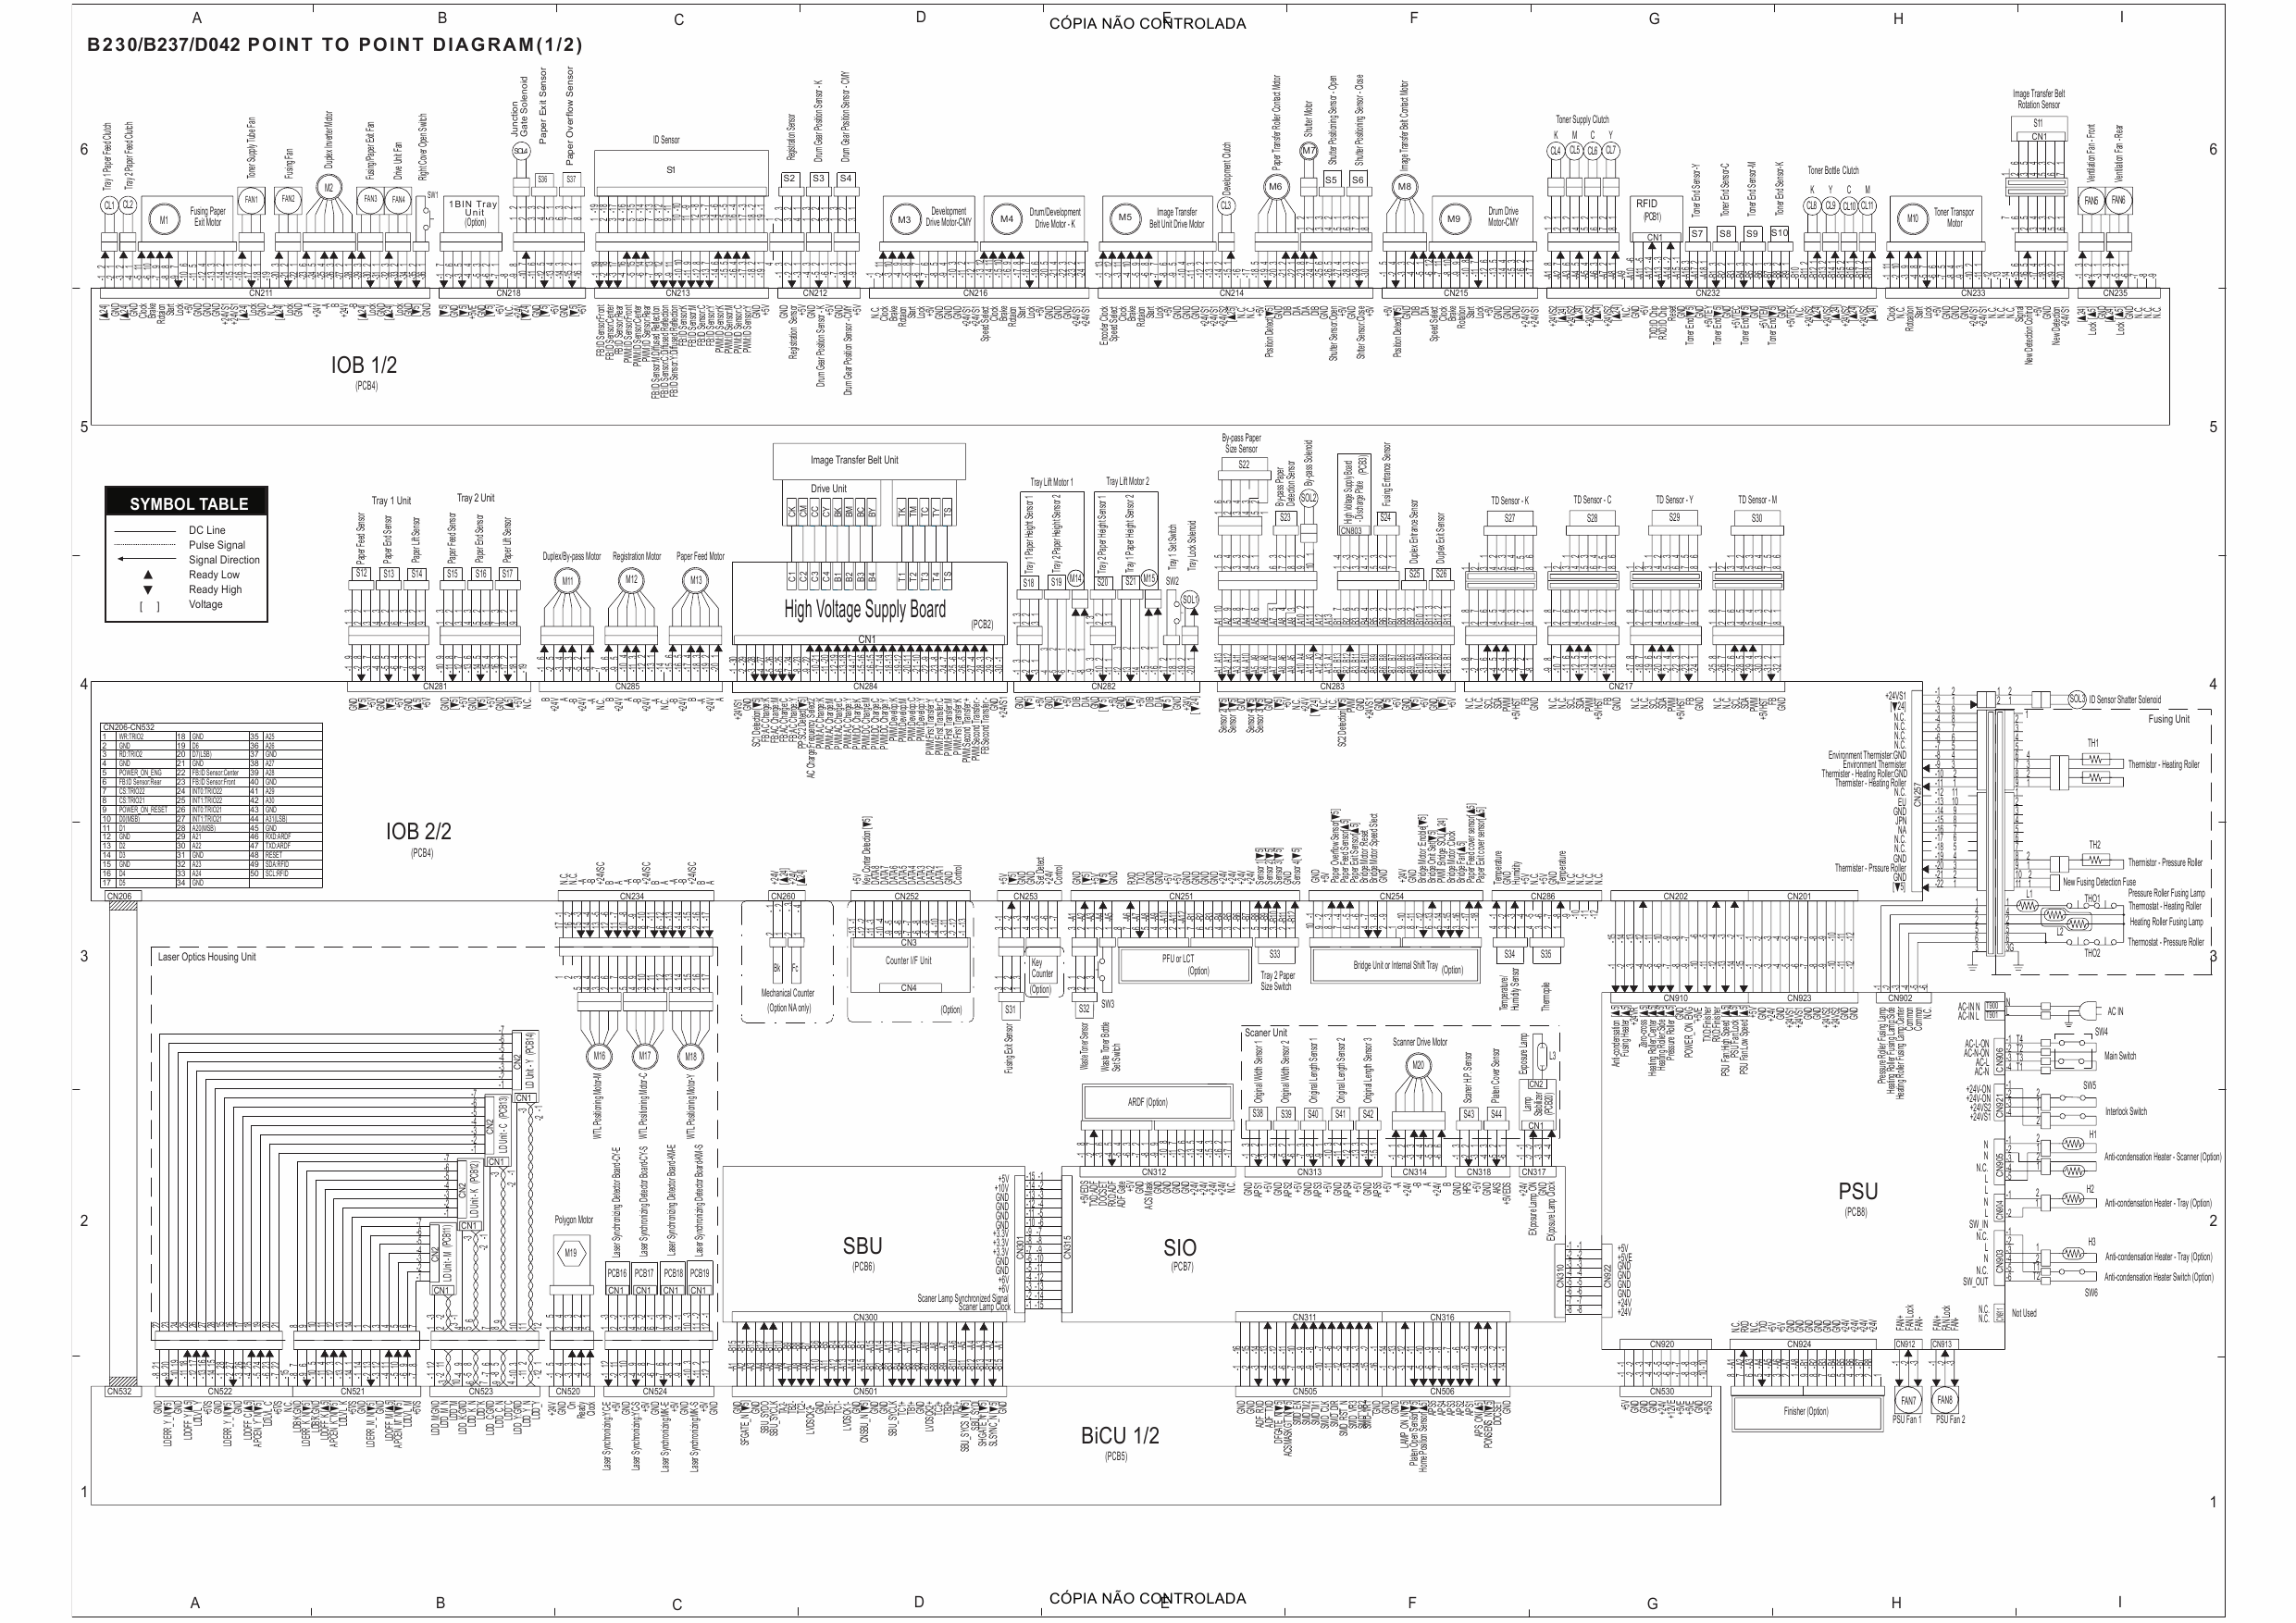 RICOH Aficio MP-C2000 C2500 C3000 B230 B237 D042 Circuit Diagram-1